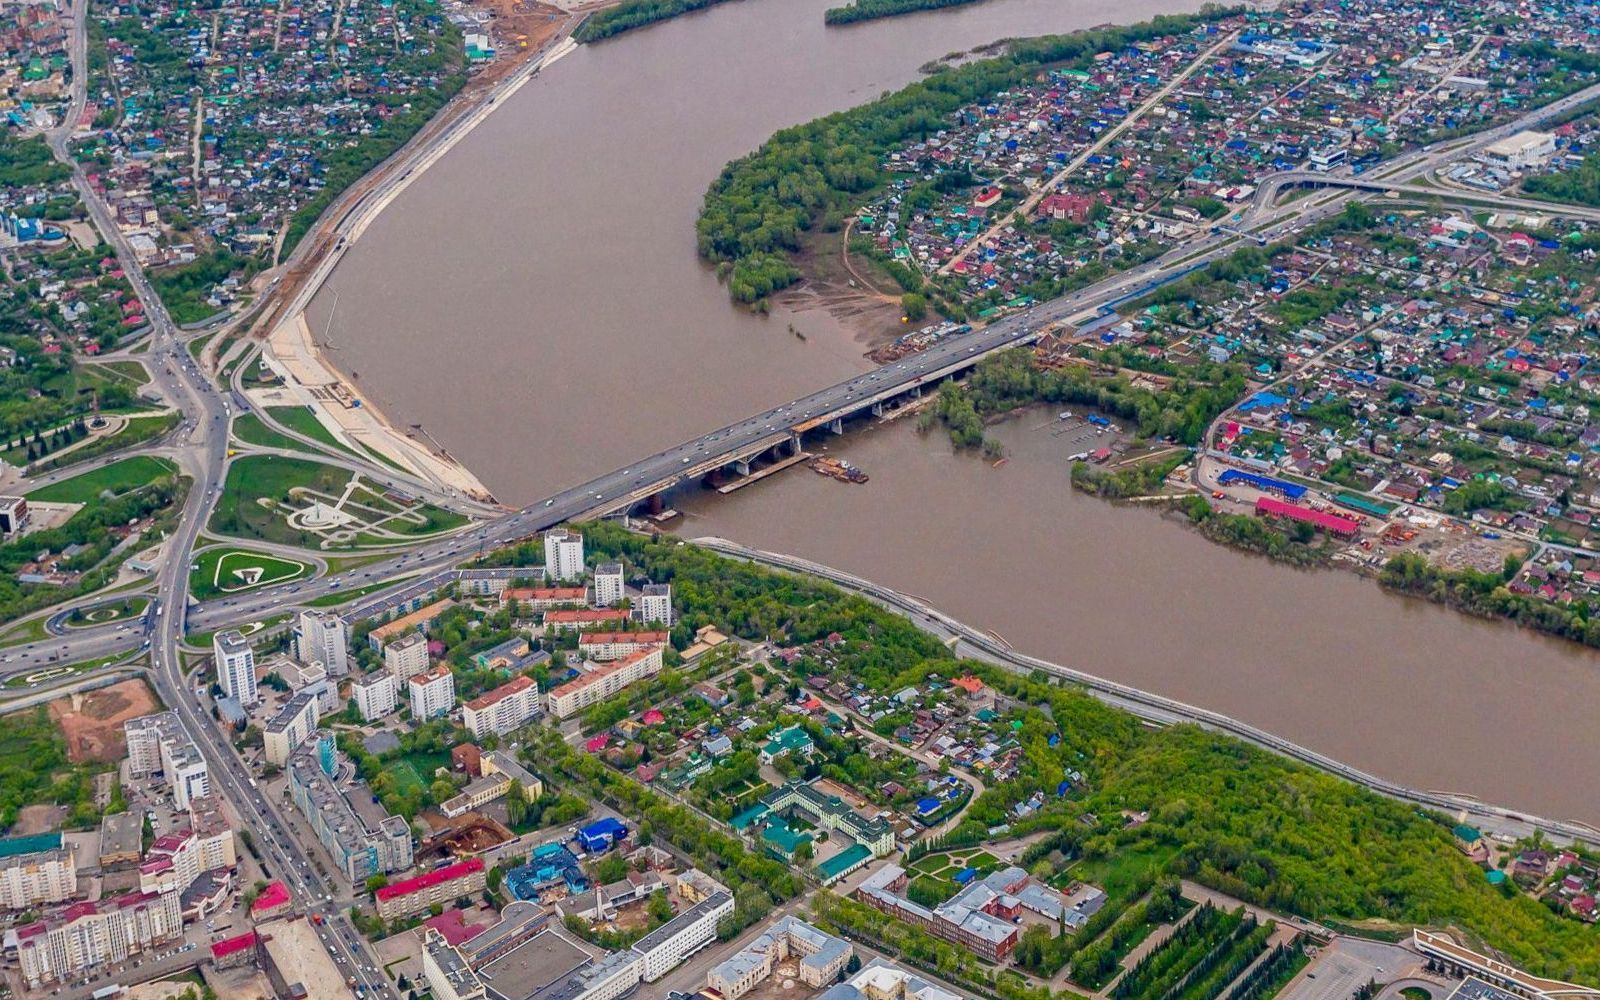 На трассе Уфа-Оренбург открыли альтернативный проезд вместо перекрытого разворота